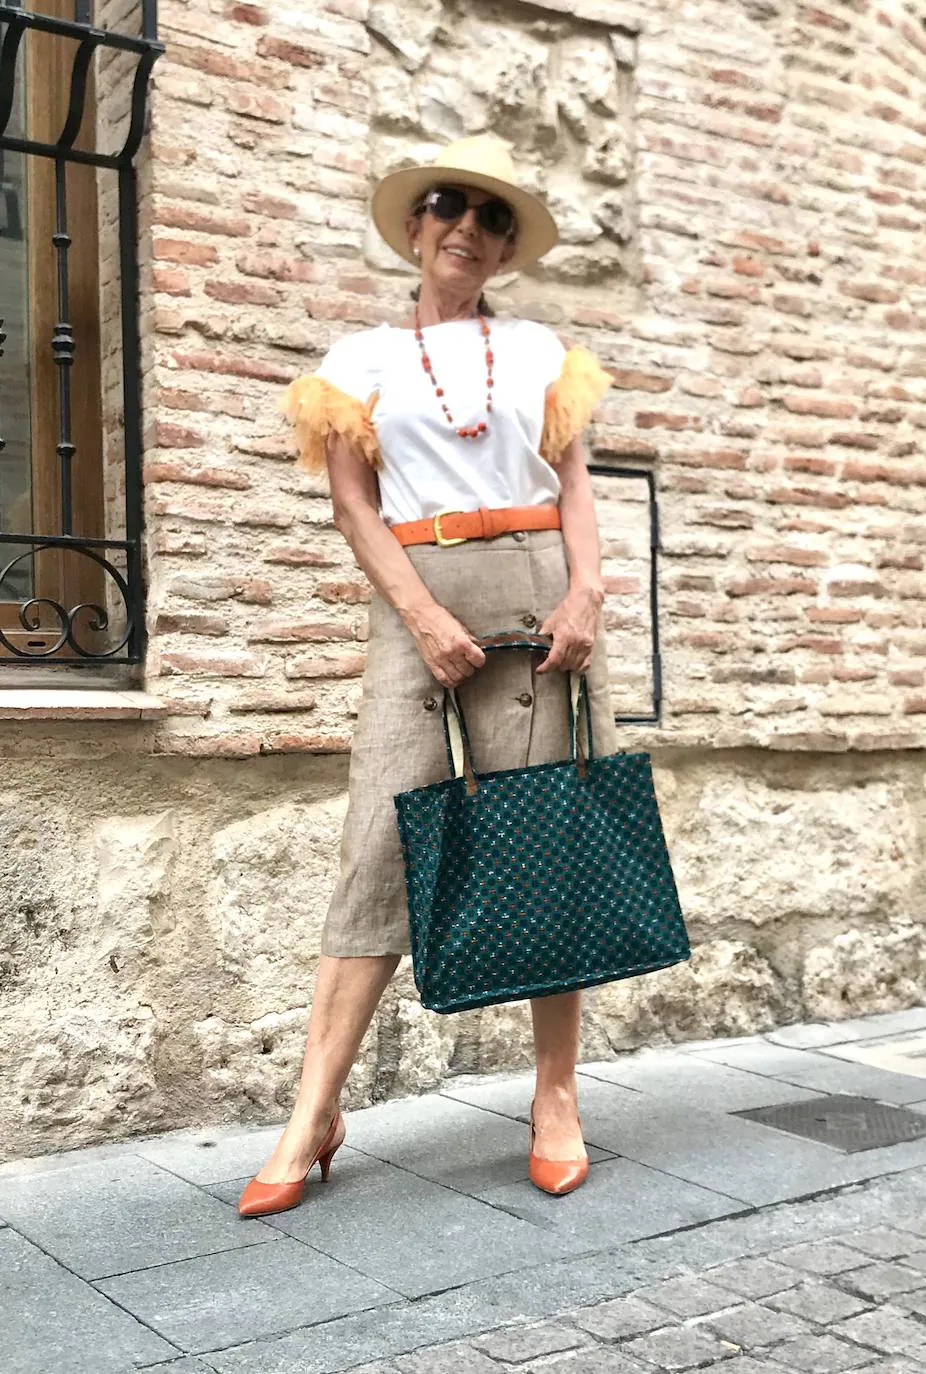 Esther Manrique (Alcalá de Henares, @aisder) nos enseña un look muy actual, con toques de la tendencia safari, combinando prendas y tonos de esta tendencia y complementándolo con su bolso de telas africanas. Un look cómodo, de tendencia y muy ponible, que ella luce con mucho estilo.